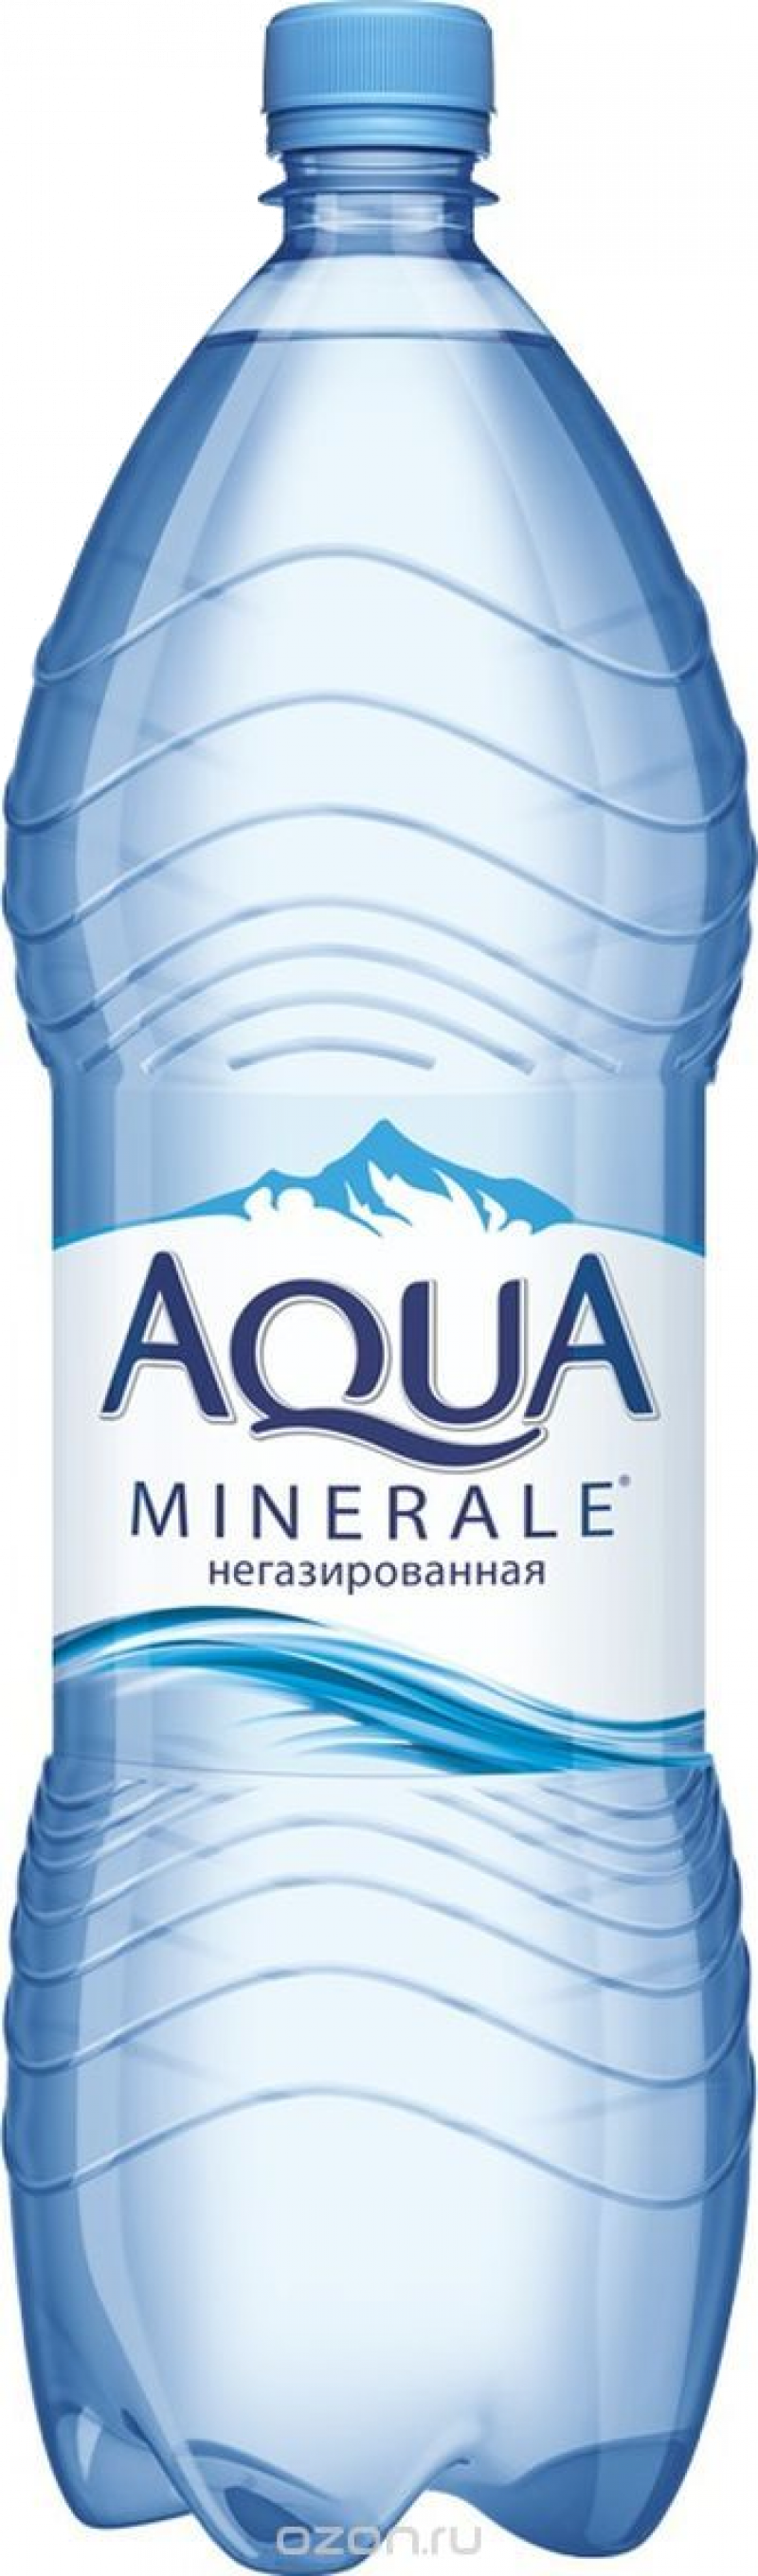 Минеральная вода ТМ Aqua Minerale негаз 2л